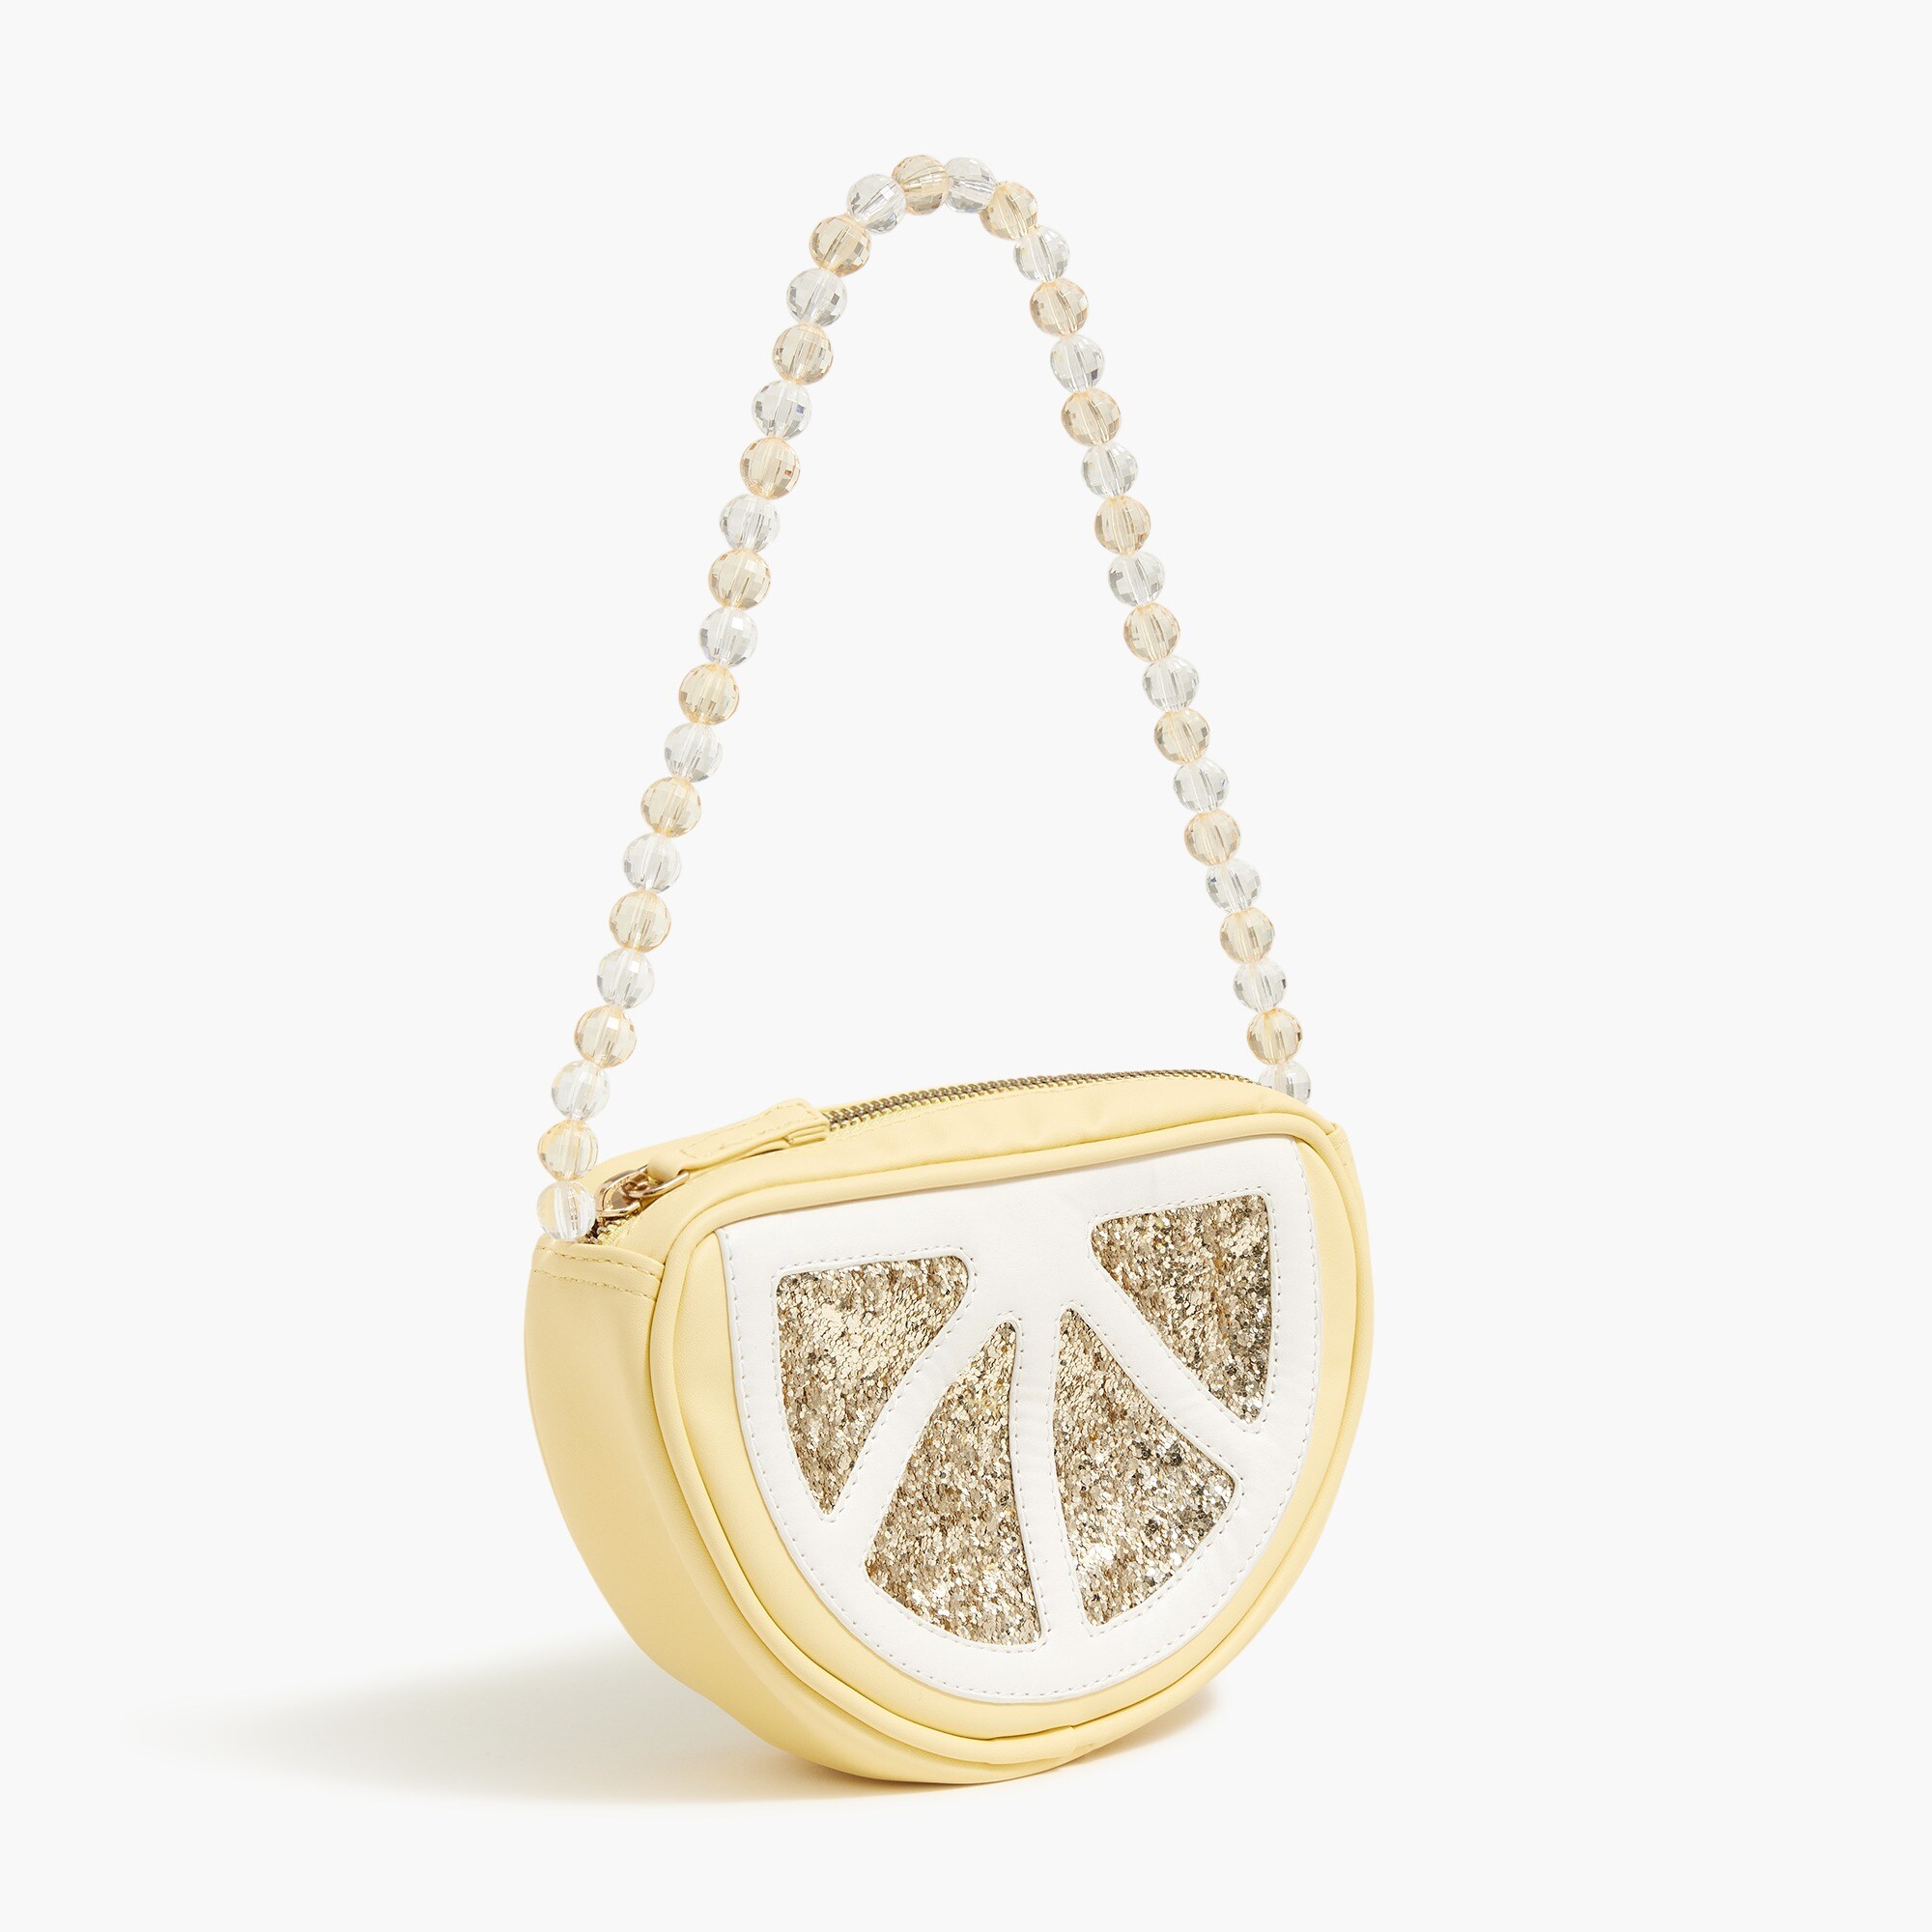  Girls' glitter lemon handbag with beaded strap